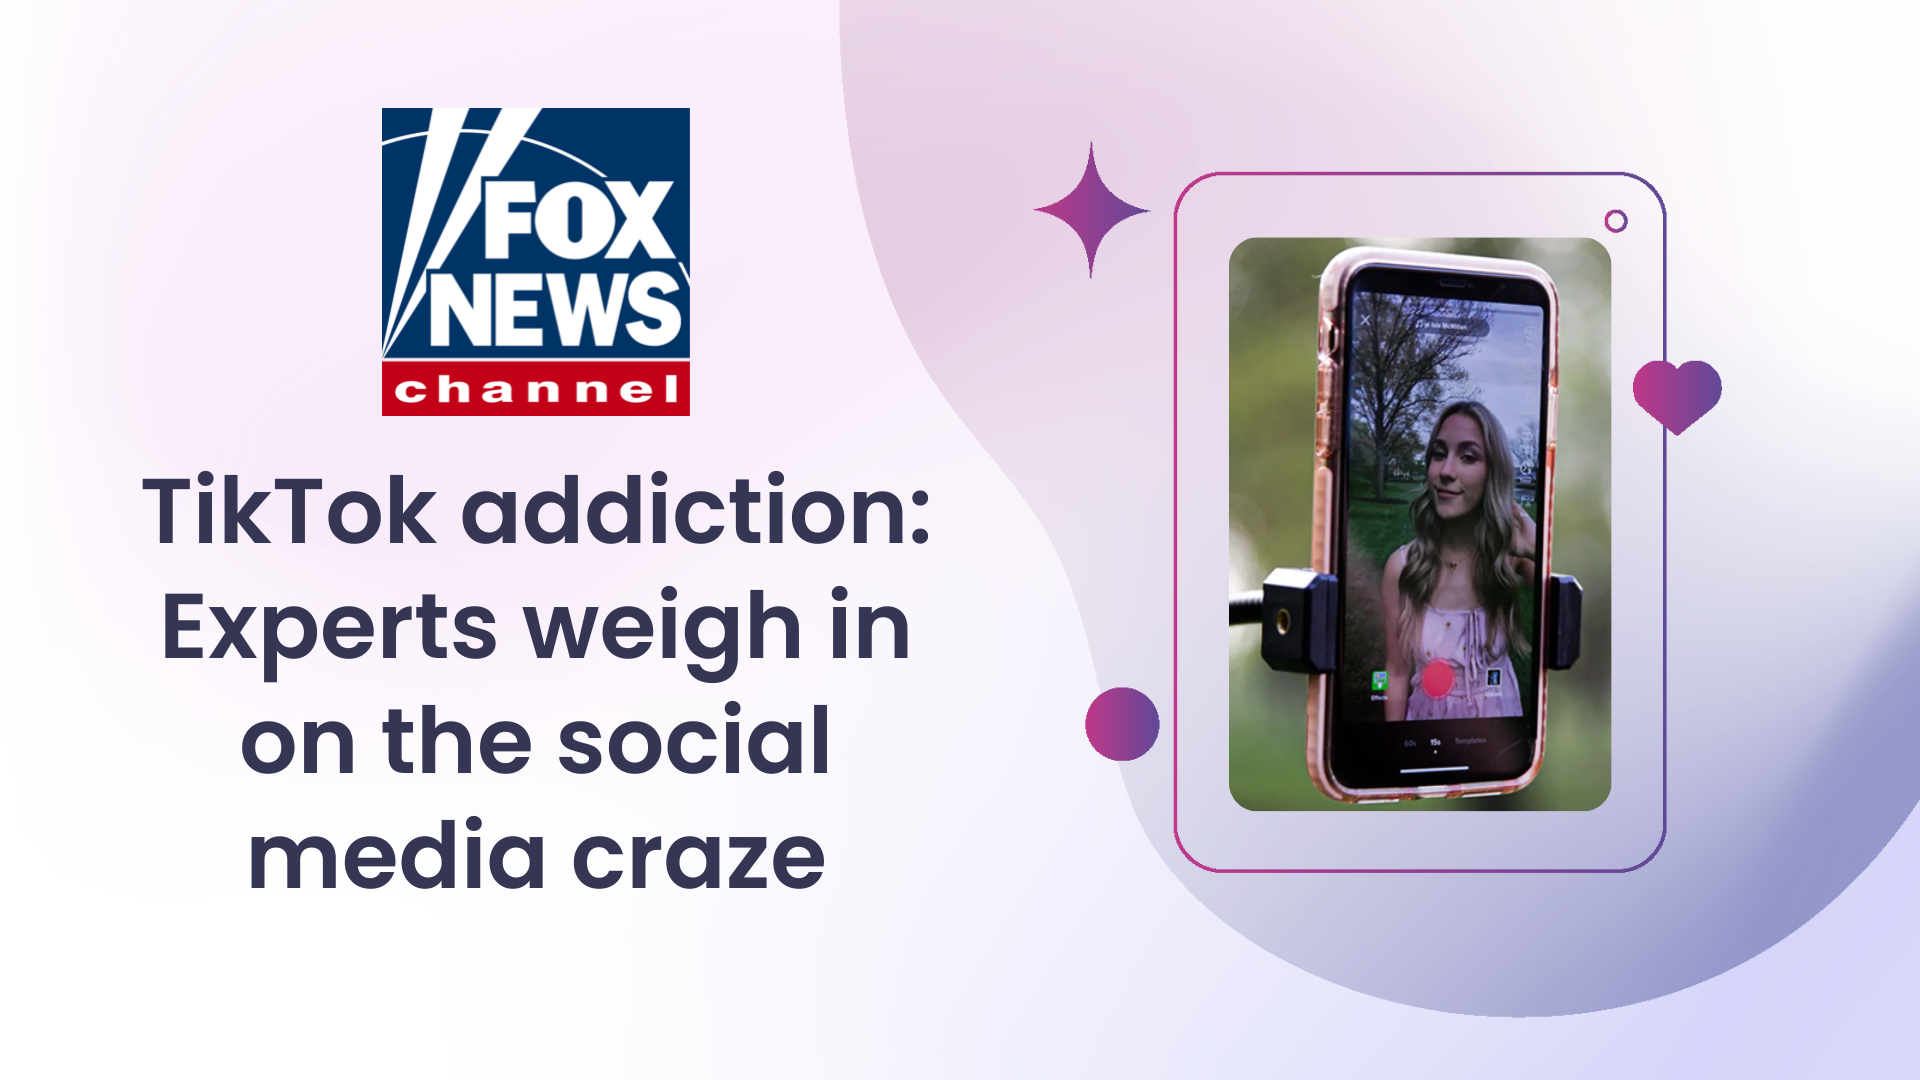 TikTok addiction on Fox News